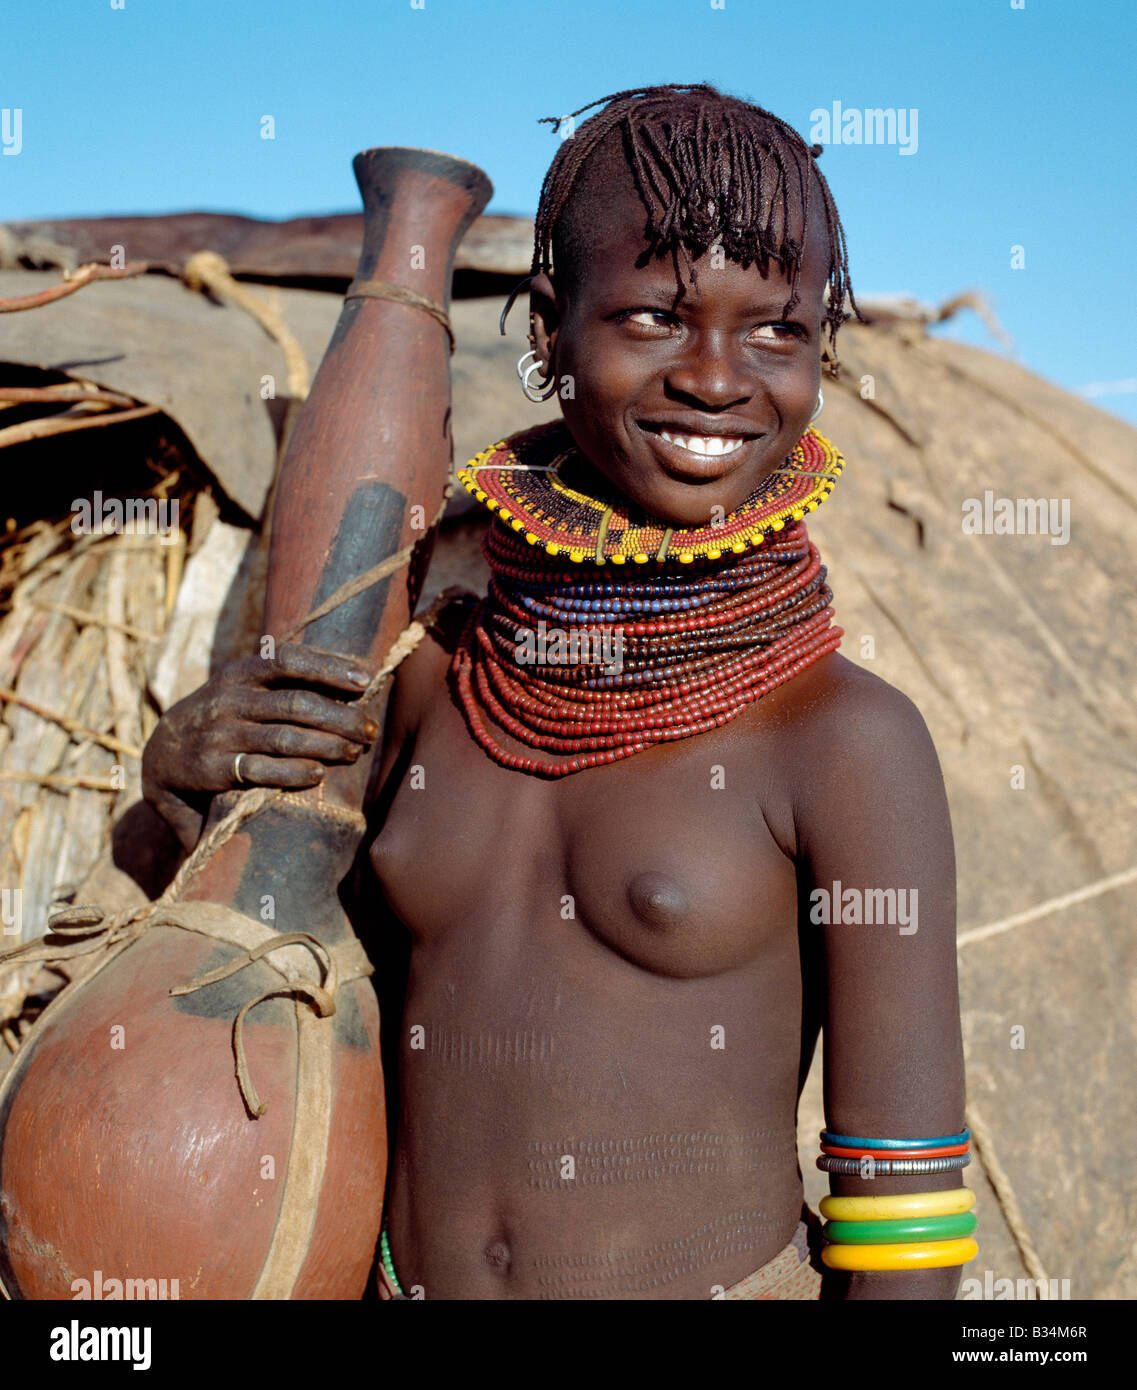 Kenia, Baragoi, Nachola. Ein Turkana-Mädchen mit einem großen Kürbis-wie Behälter als ein Gefäß für Wasser oder Milch verwendet. Bei fehlender Kürbisse Schnitzen die Turkana ihre Container aus Weichholz, wie Sie von den gemeinsamen Commiphora-Arten, die in semi-ariden Land lebt. Stockfoto